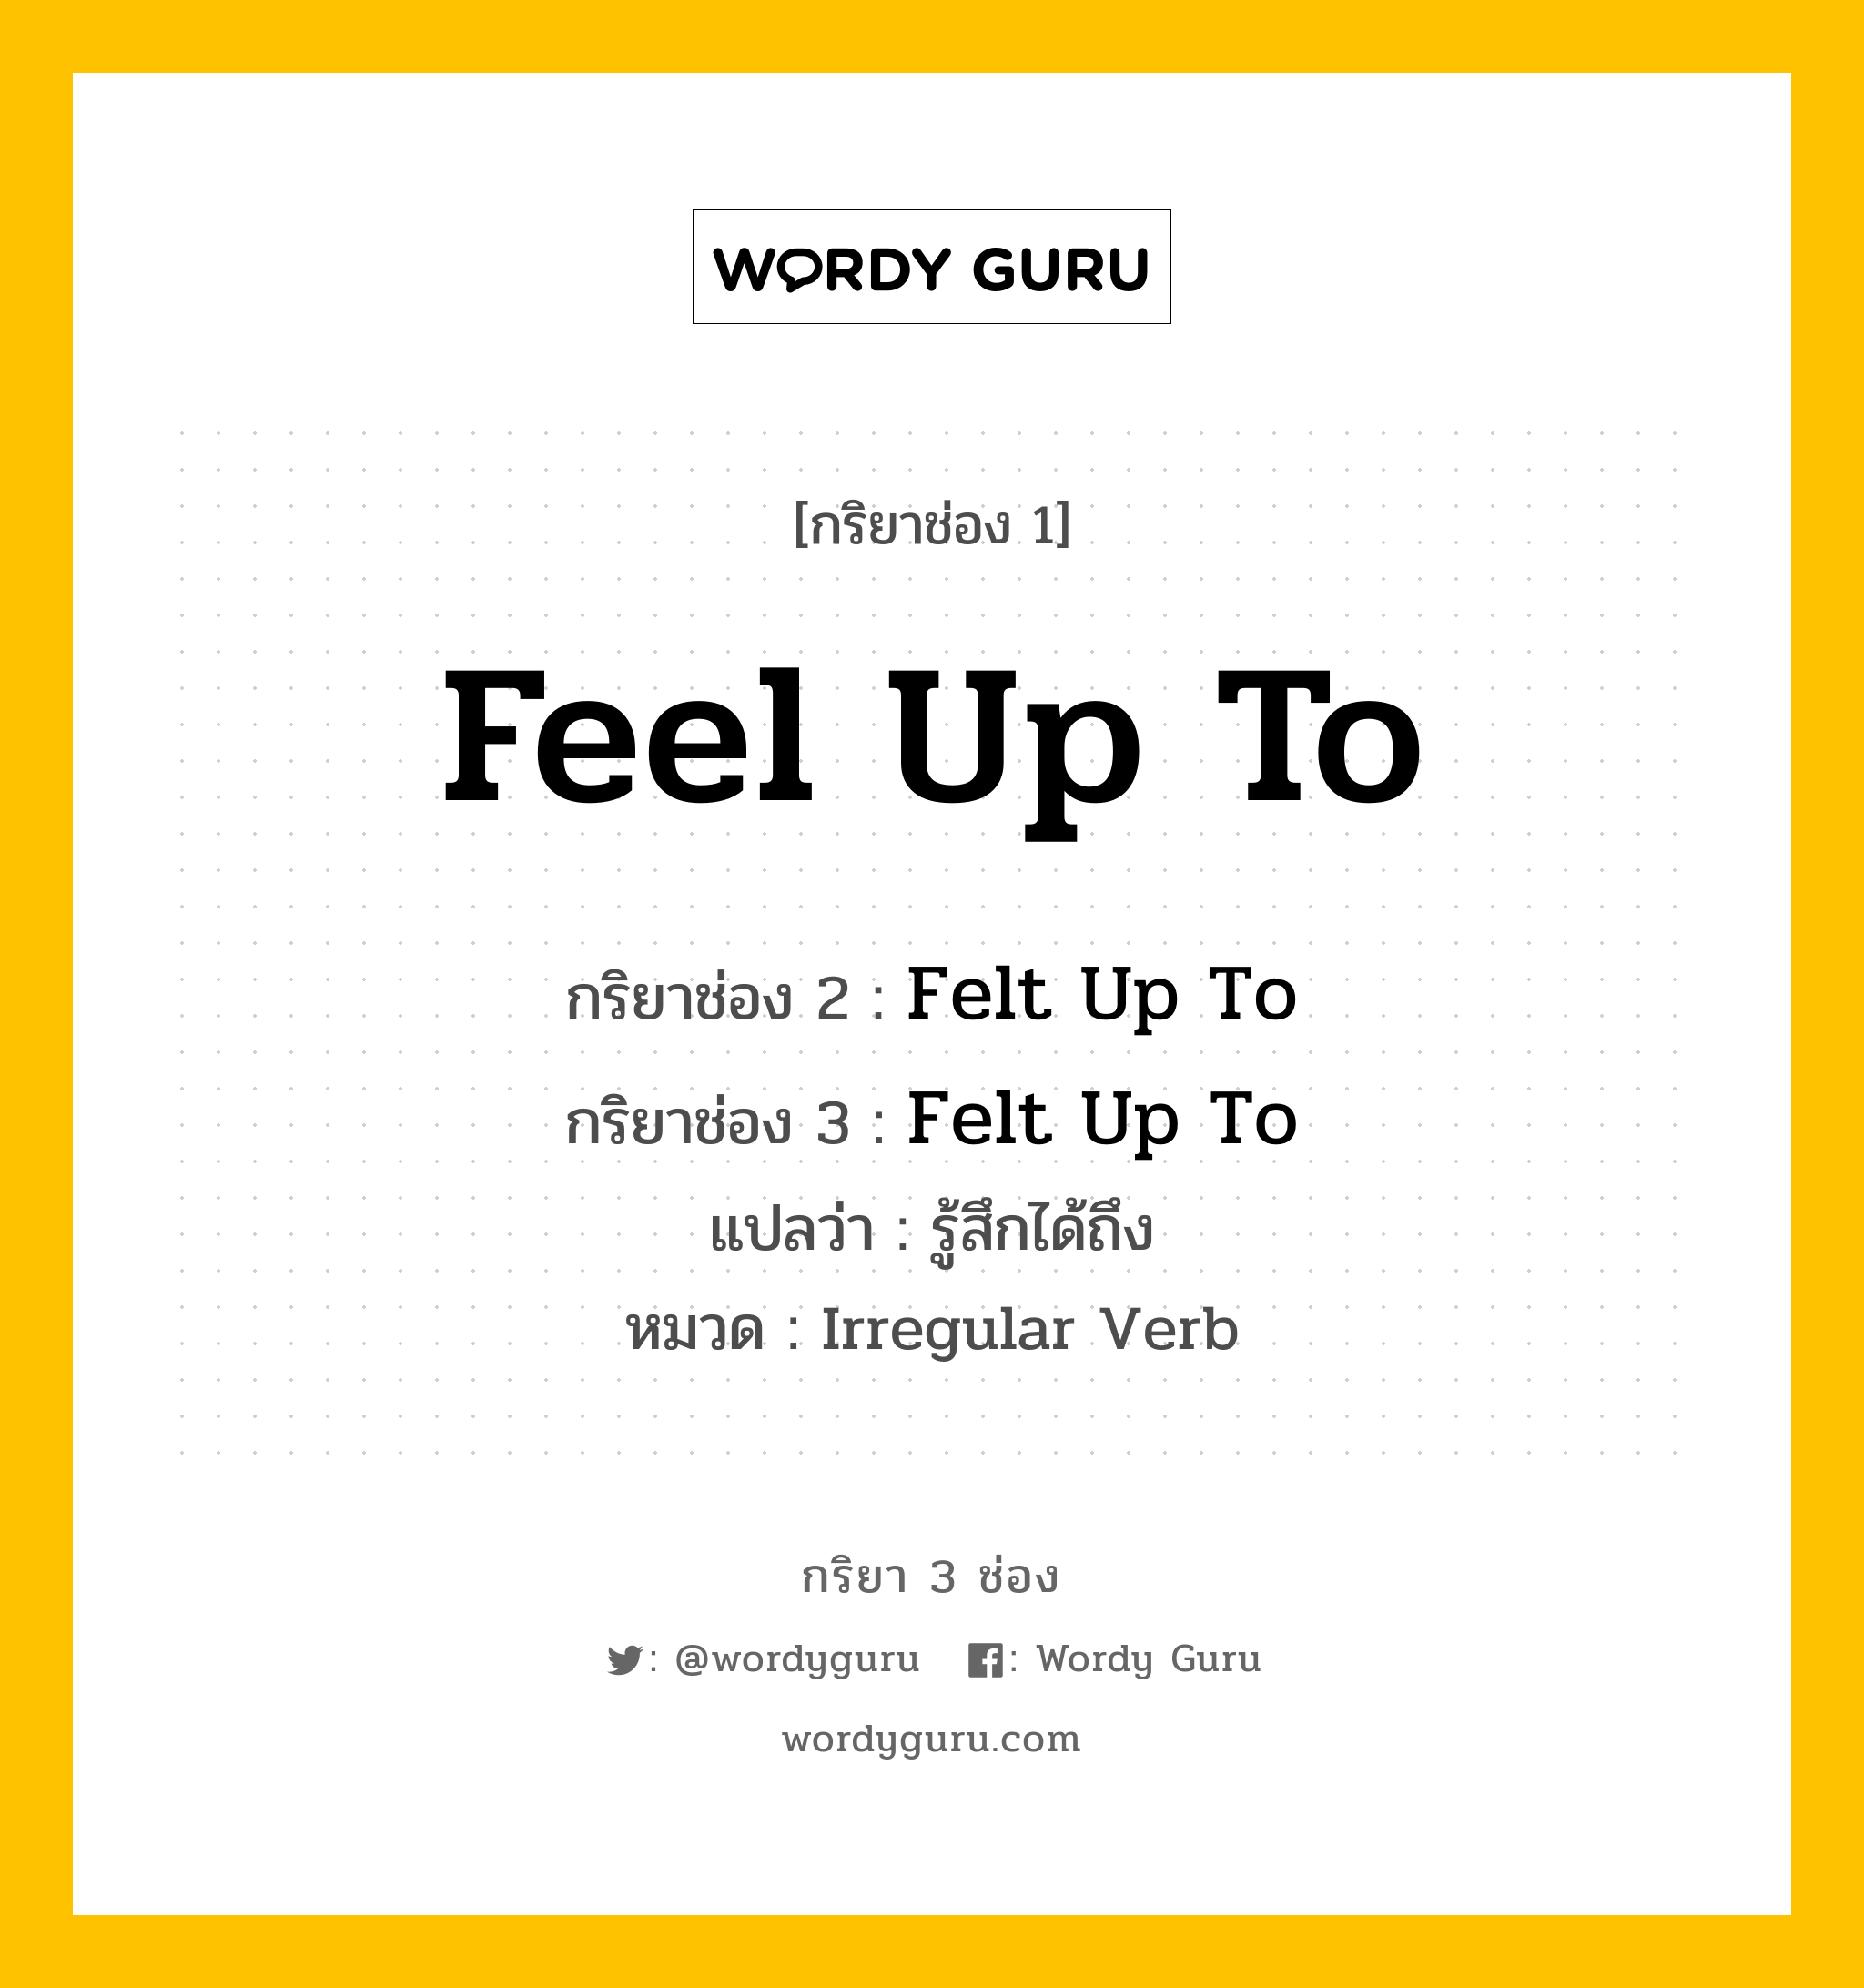 กริยา 3 ช่อง: Feel Up To ช่อง 2 Feel Up To ช่อง 3 คืออะไร, กริยาช่อง 1 Feel Up To กริยาช่อง 2 Felt Up To กริยาช่อง 3 Felt Up To แปลว่า รู้สึกได้ถึง หมวด Irregular Verb หมวด Irregular Verb